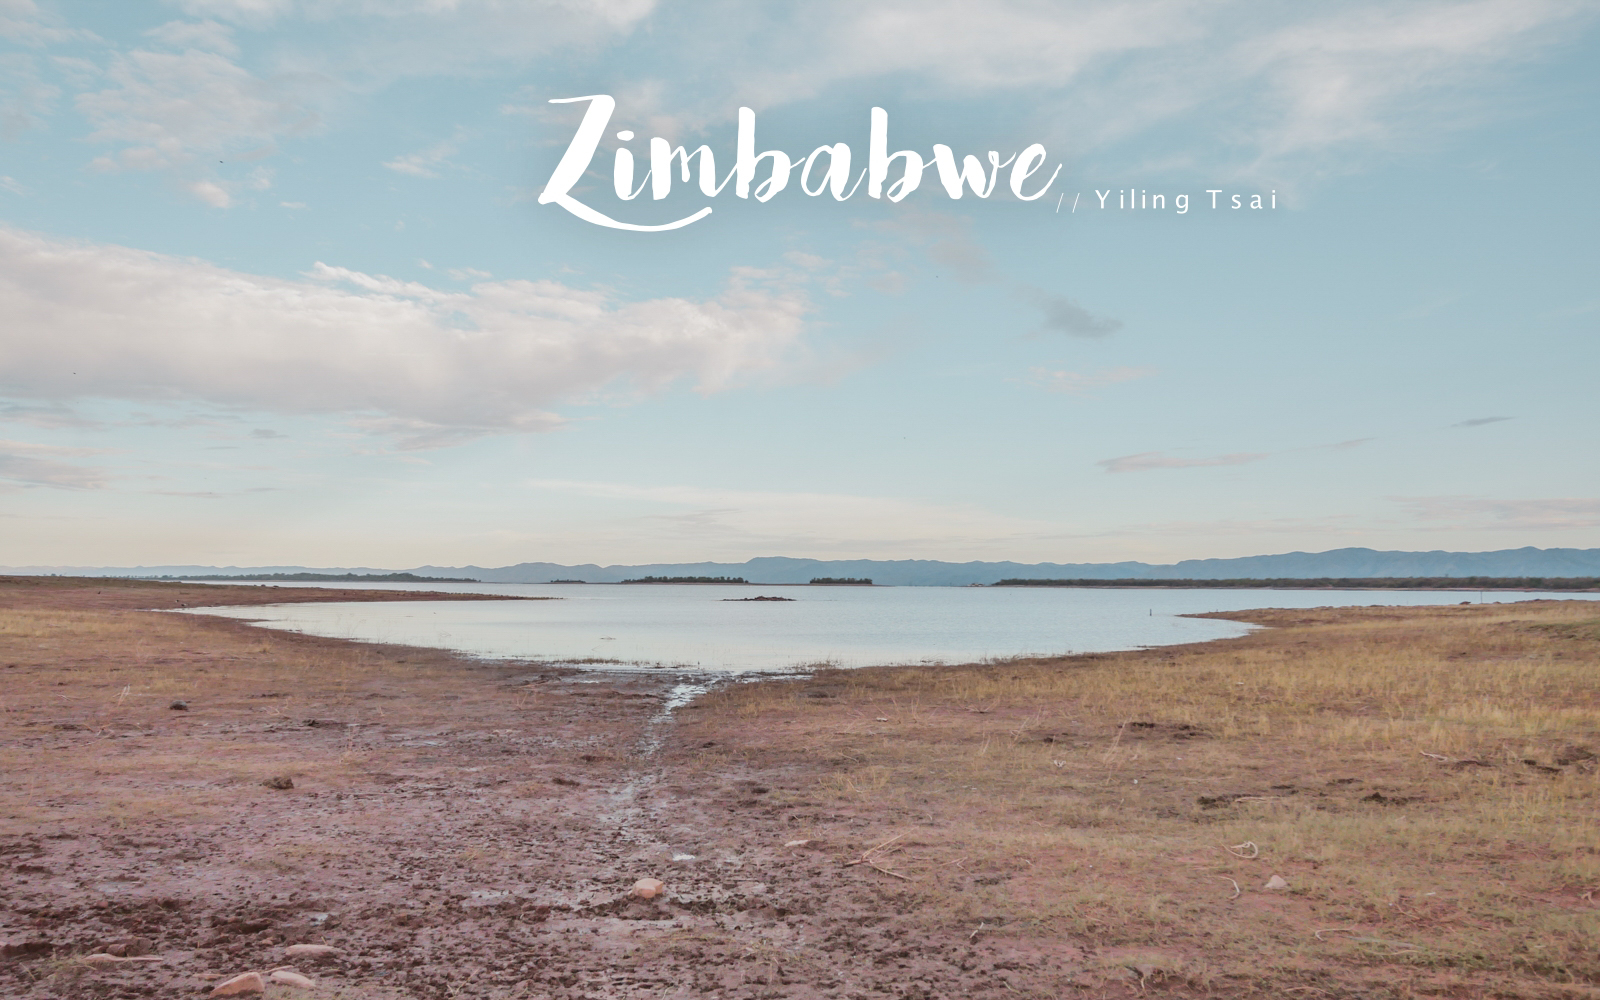 辛巴威景點 馬圖薩多納國家公園 卡里巴水庫 非洲獵遊、河谷健行、釣魚體驗